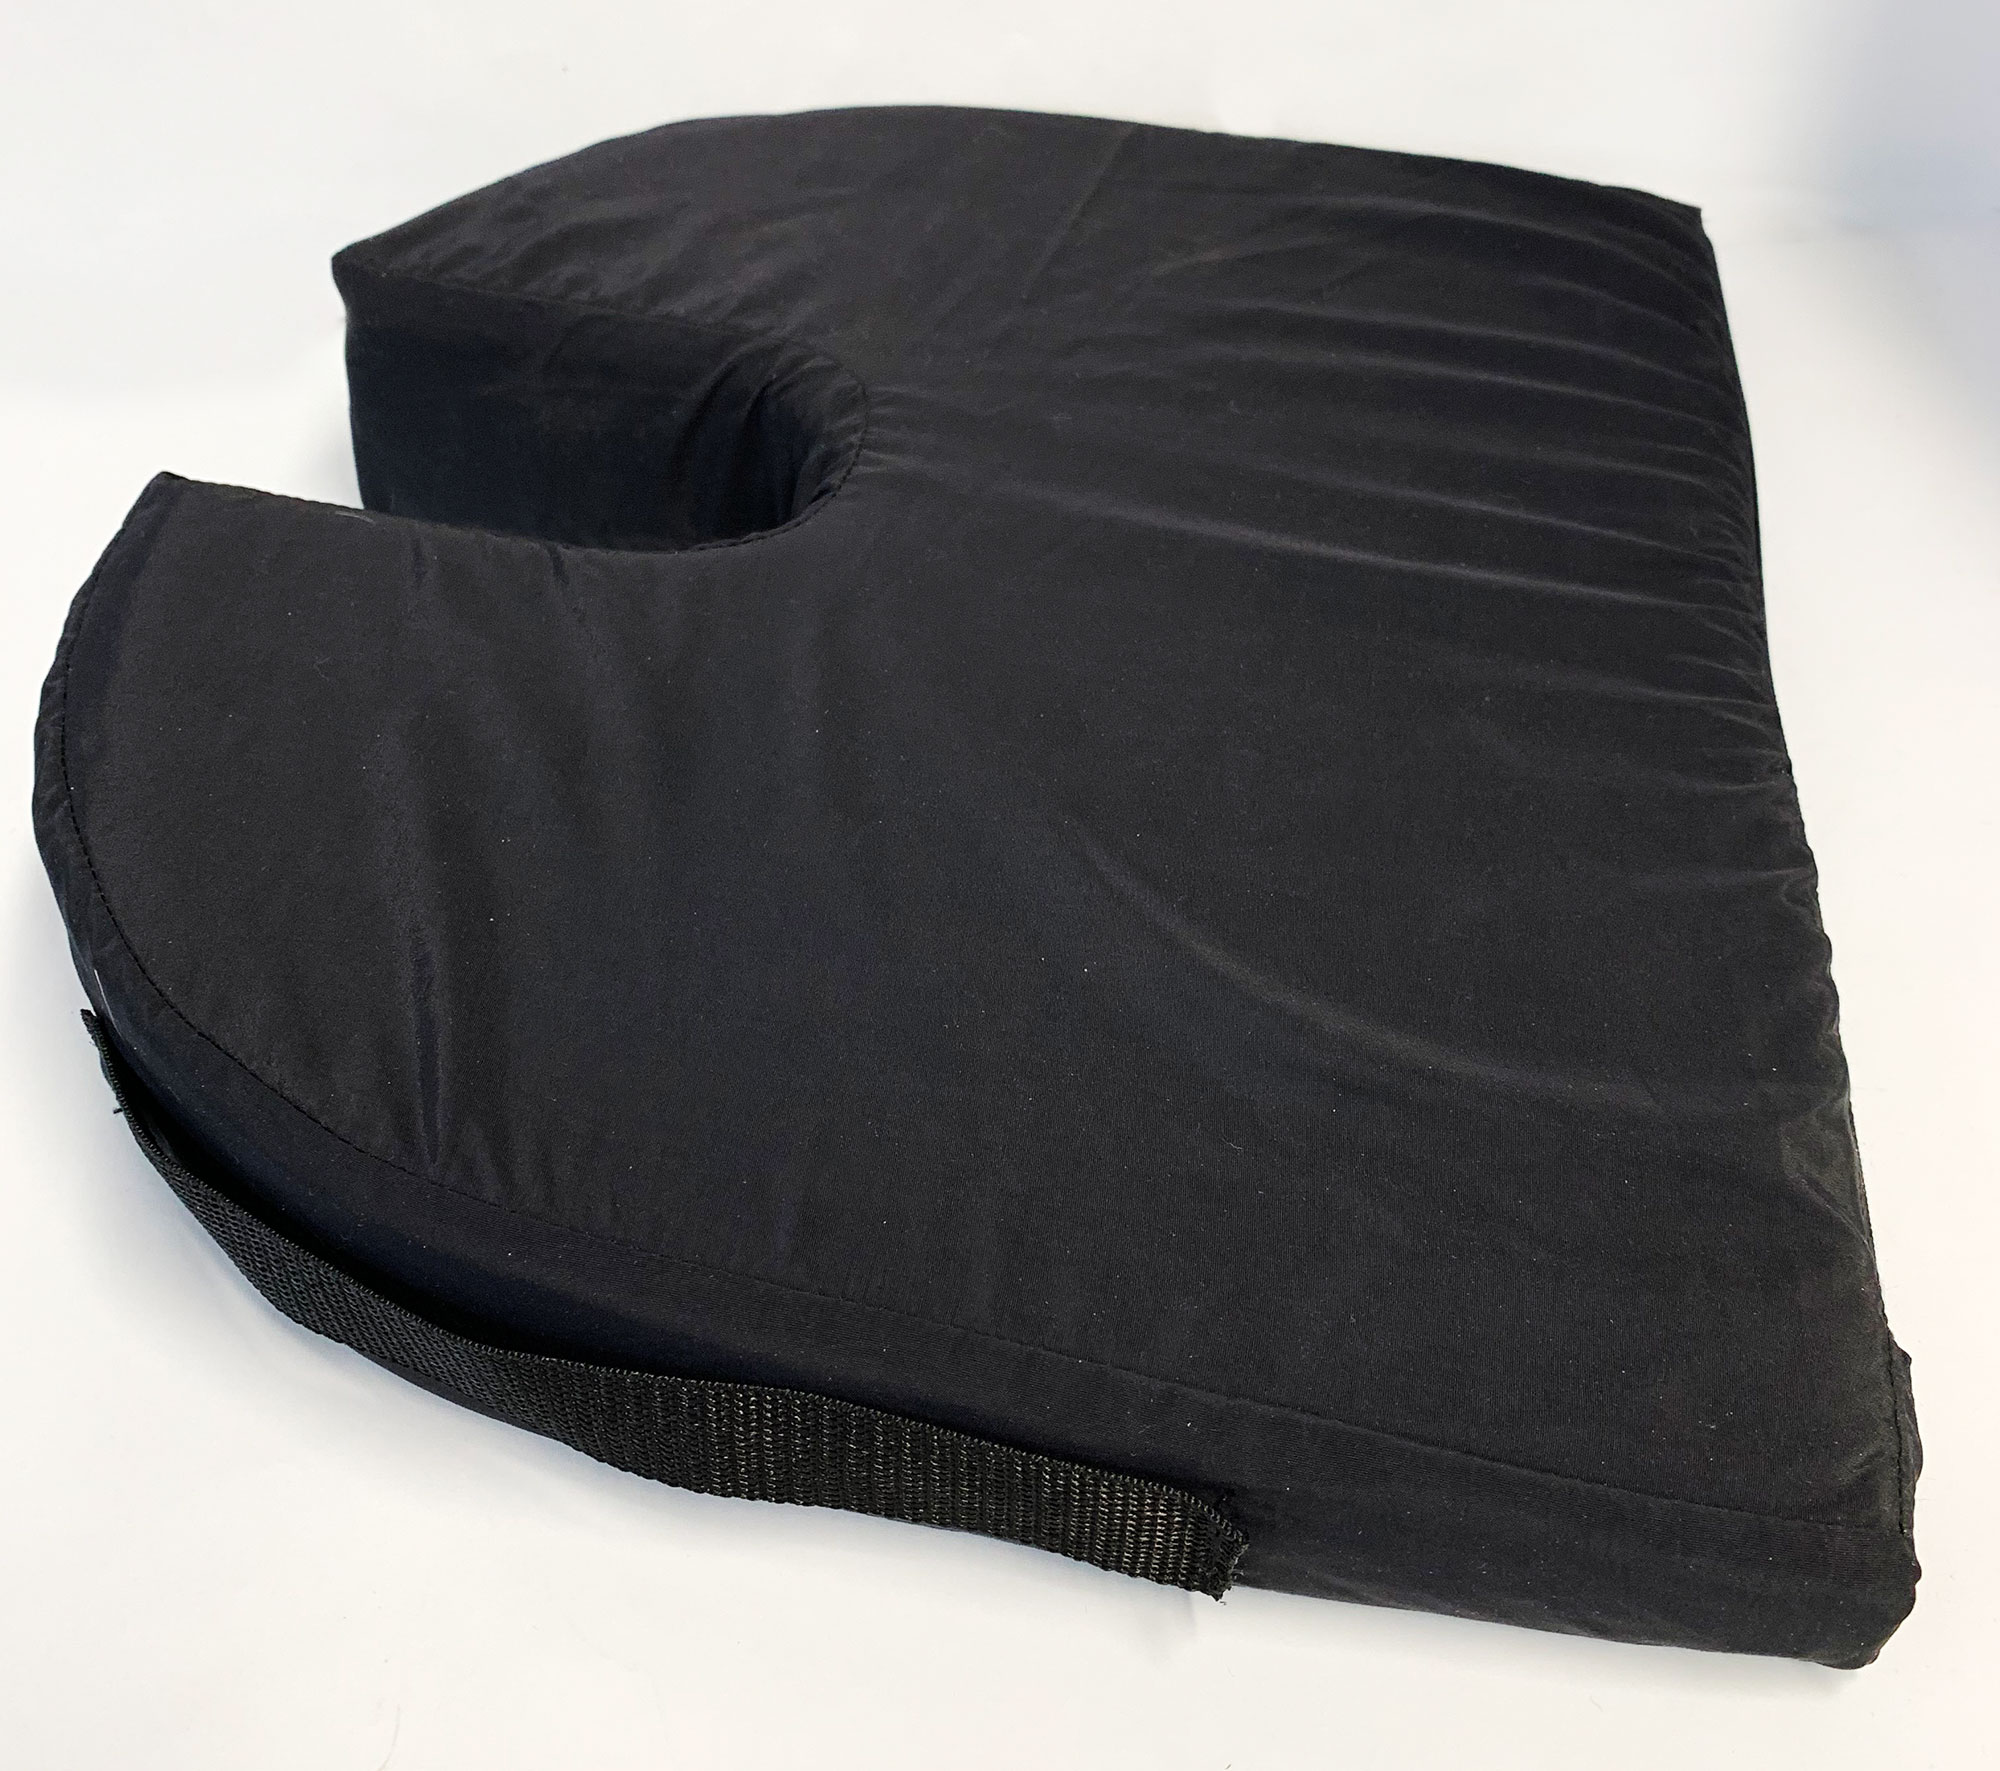 Black Nylon Cover for Orthopedic Tailbone Cushion - RelaxoBak